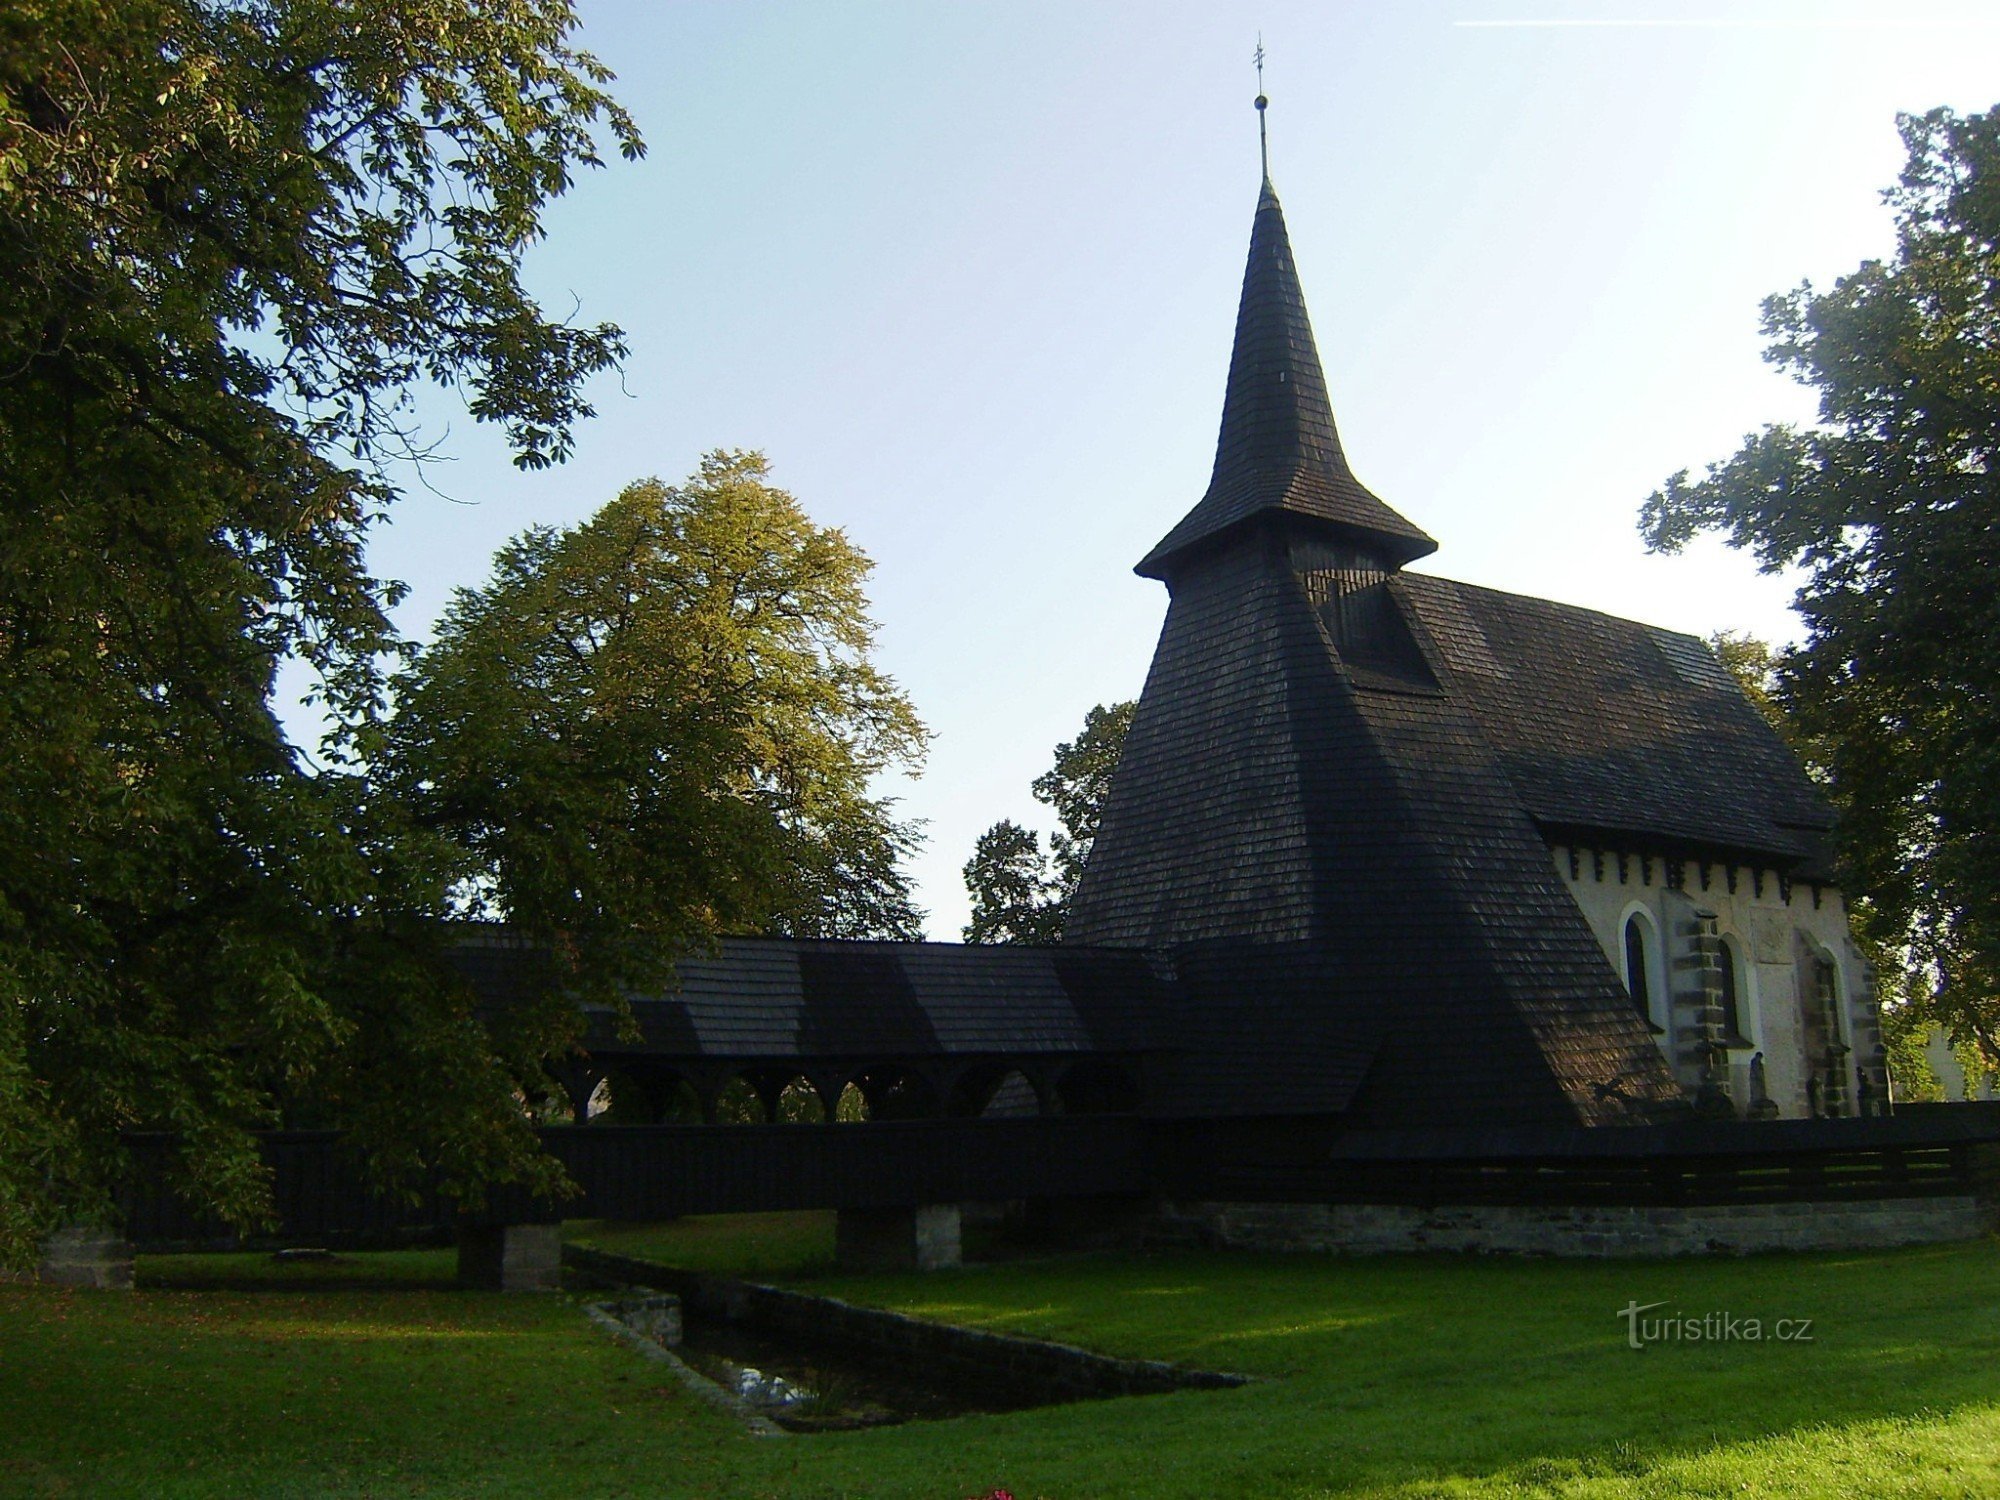 Kočí - Kerk van St. Bartholomeus